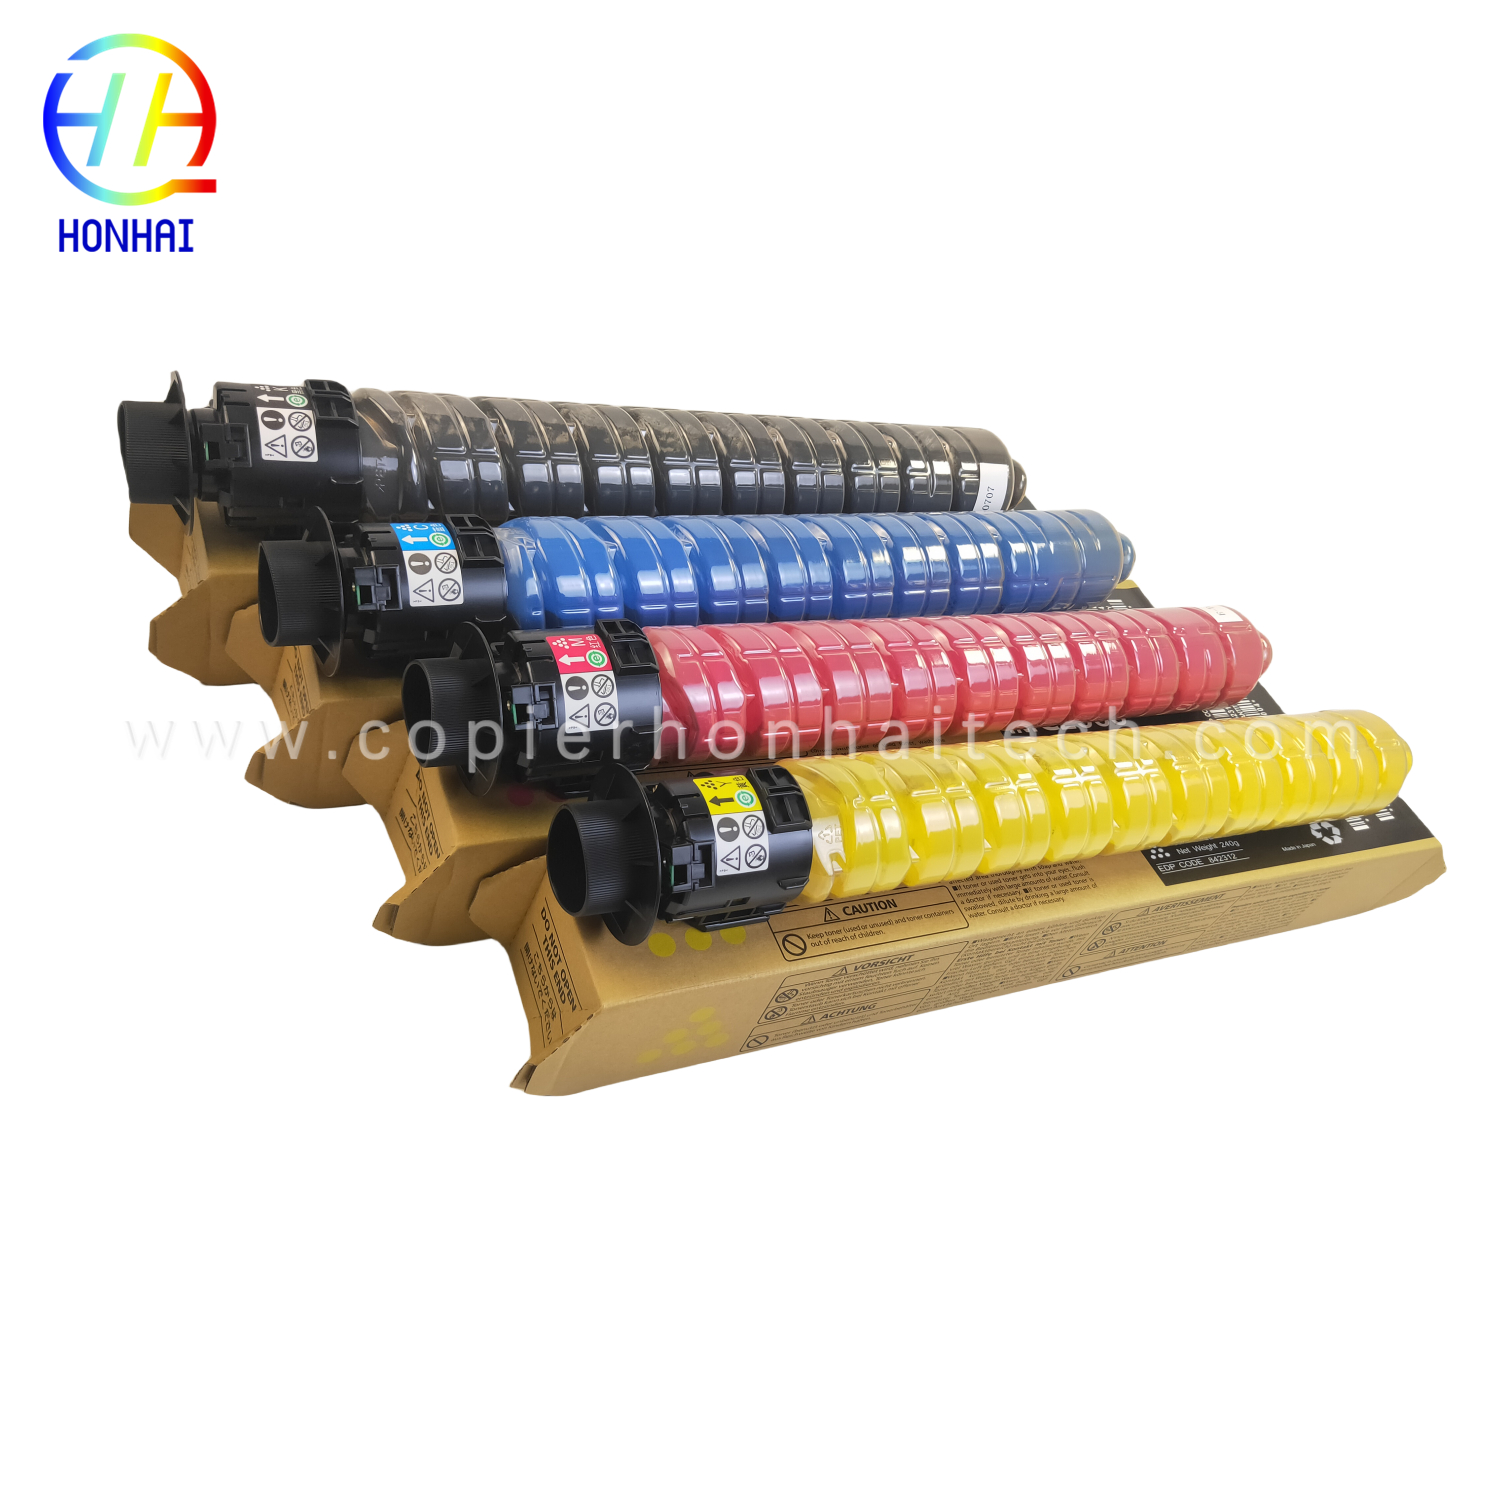 https://www.copierhonhaitech.com/copy-color-toner-cartridge-for-ricoh-aficio-mp-c2000-2500-3000-spc810-811-821-c2500c-ምርት/